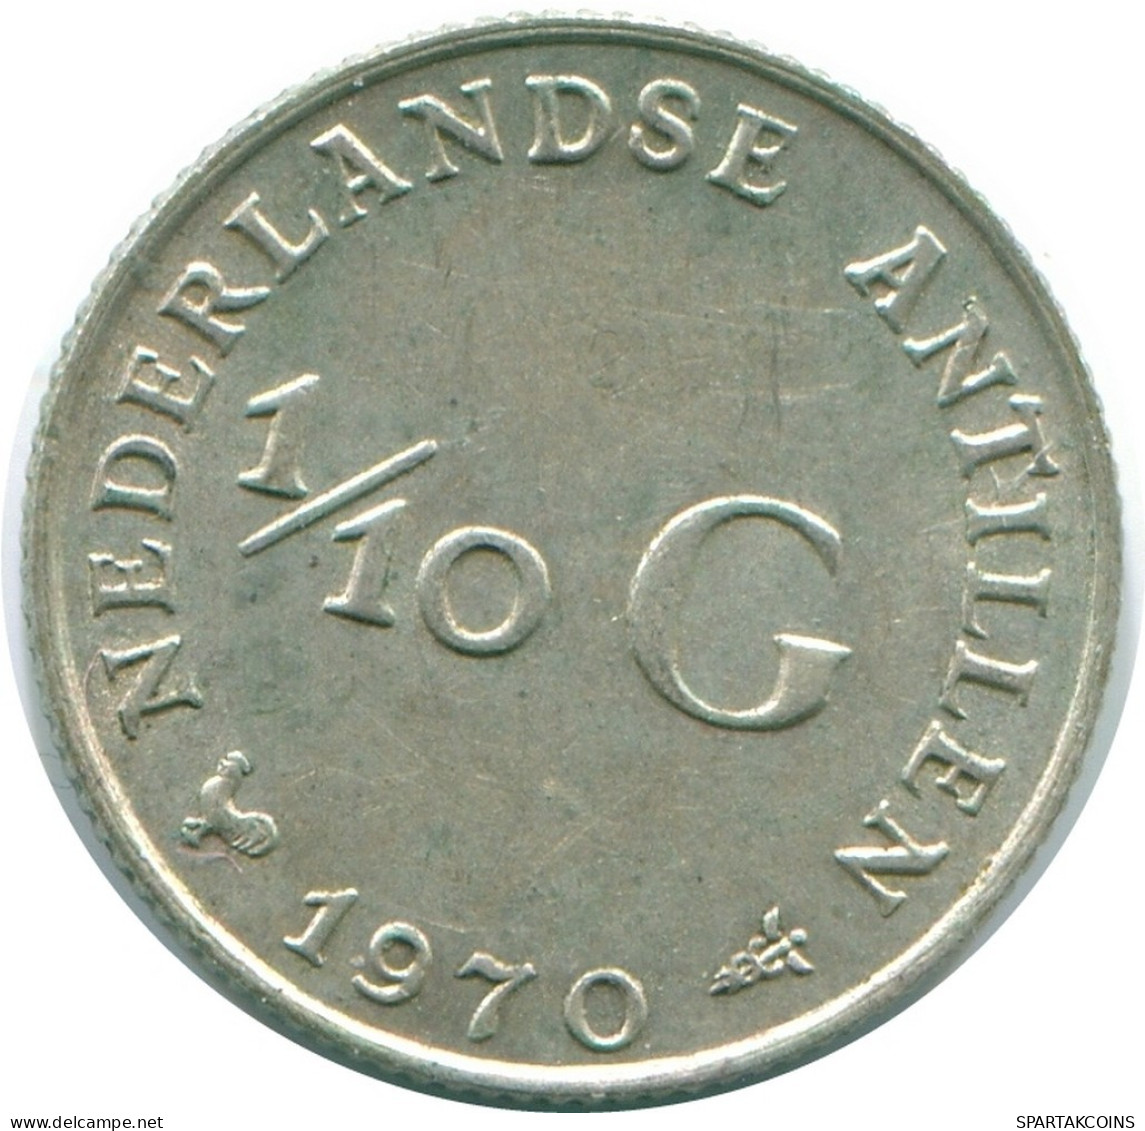 1/10 GULDEN 1970 NIEDERLÄNDISCHE ANTILLEN SILBER Koloniale Münze #NL13073.3.D.A - Nederlandse Antillen